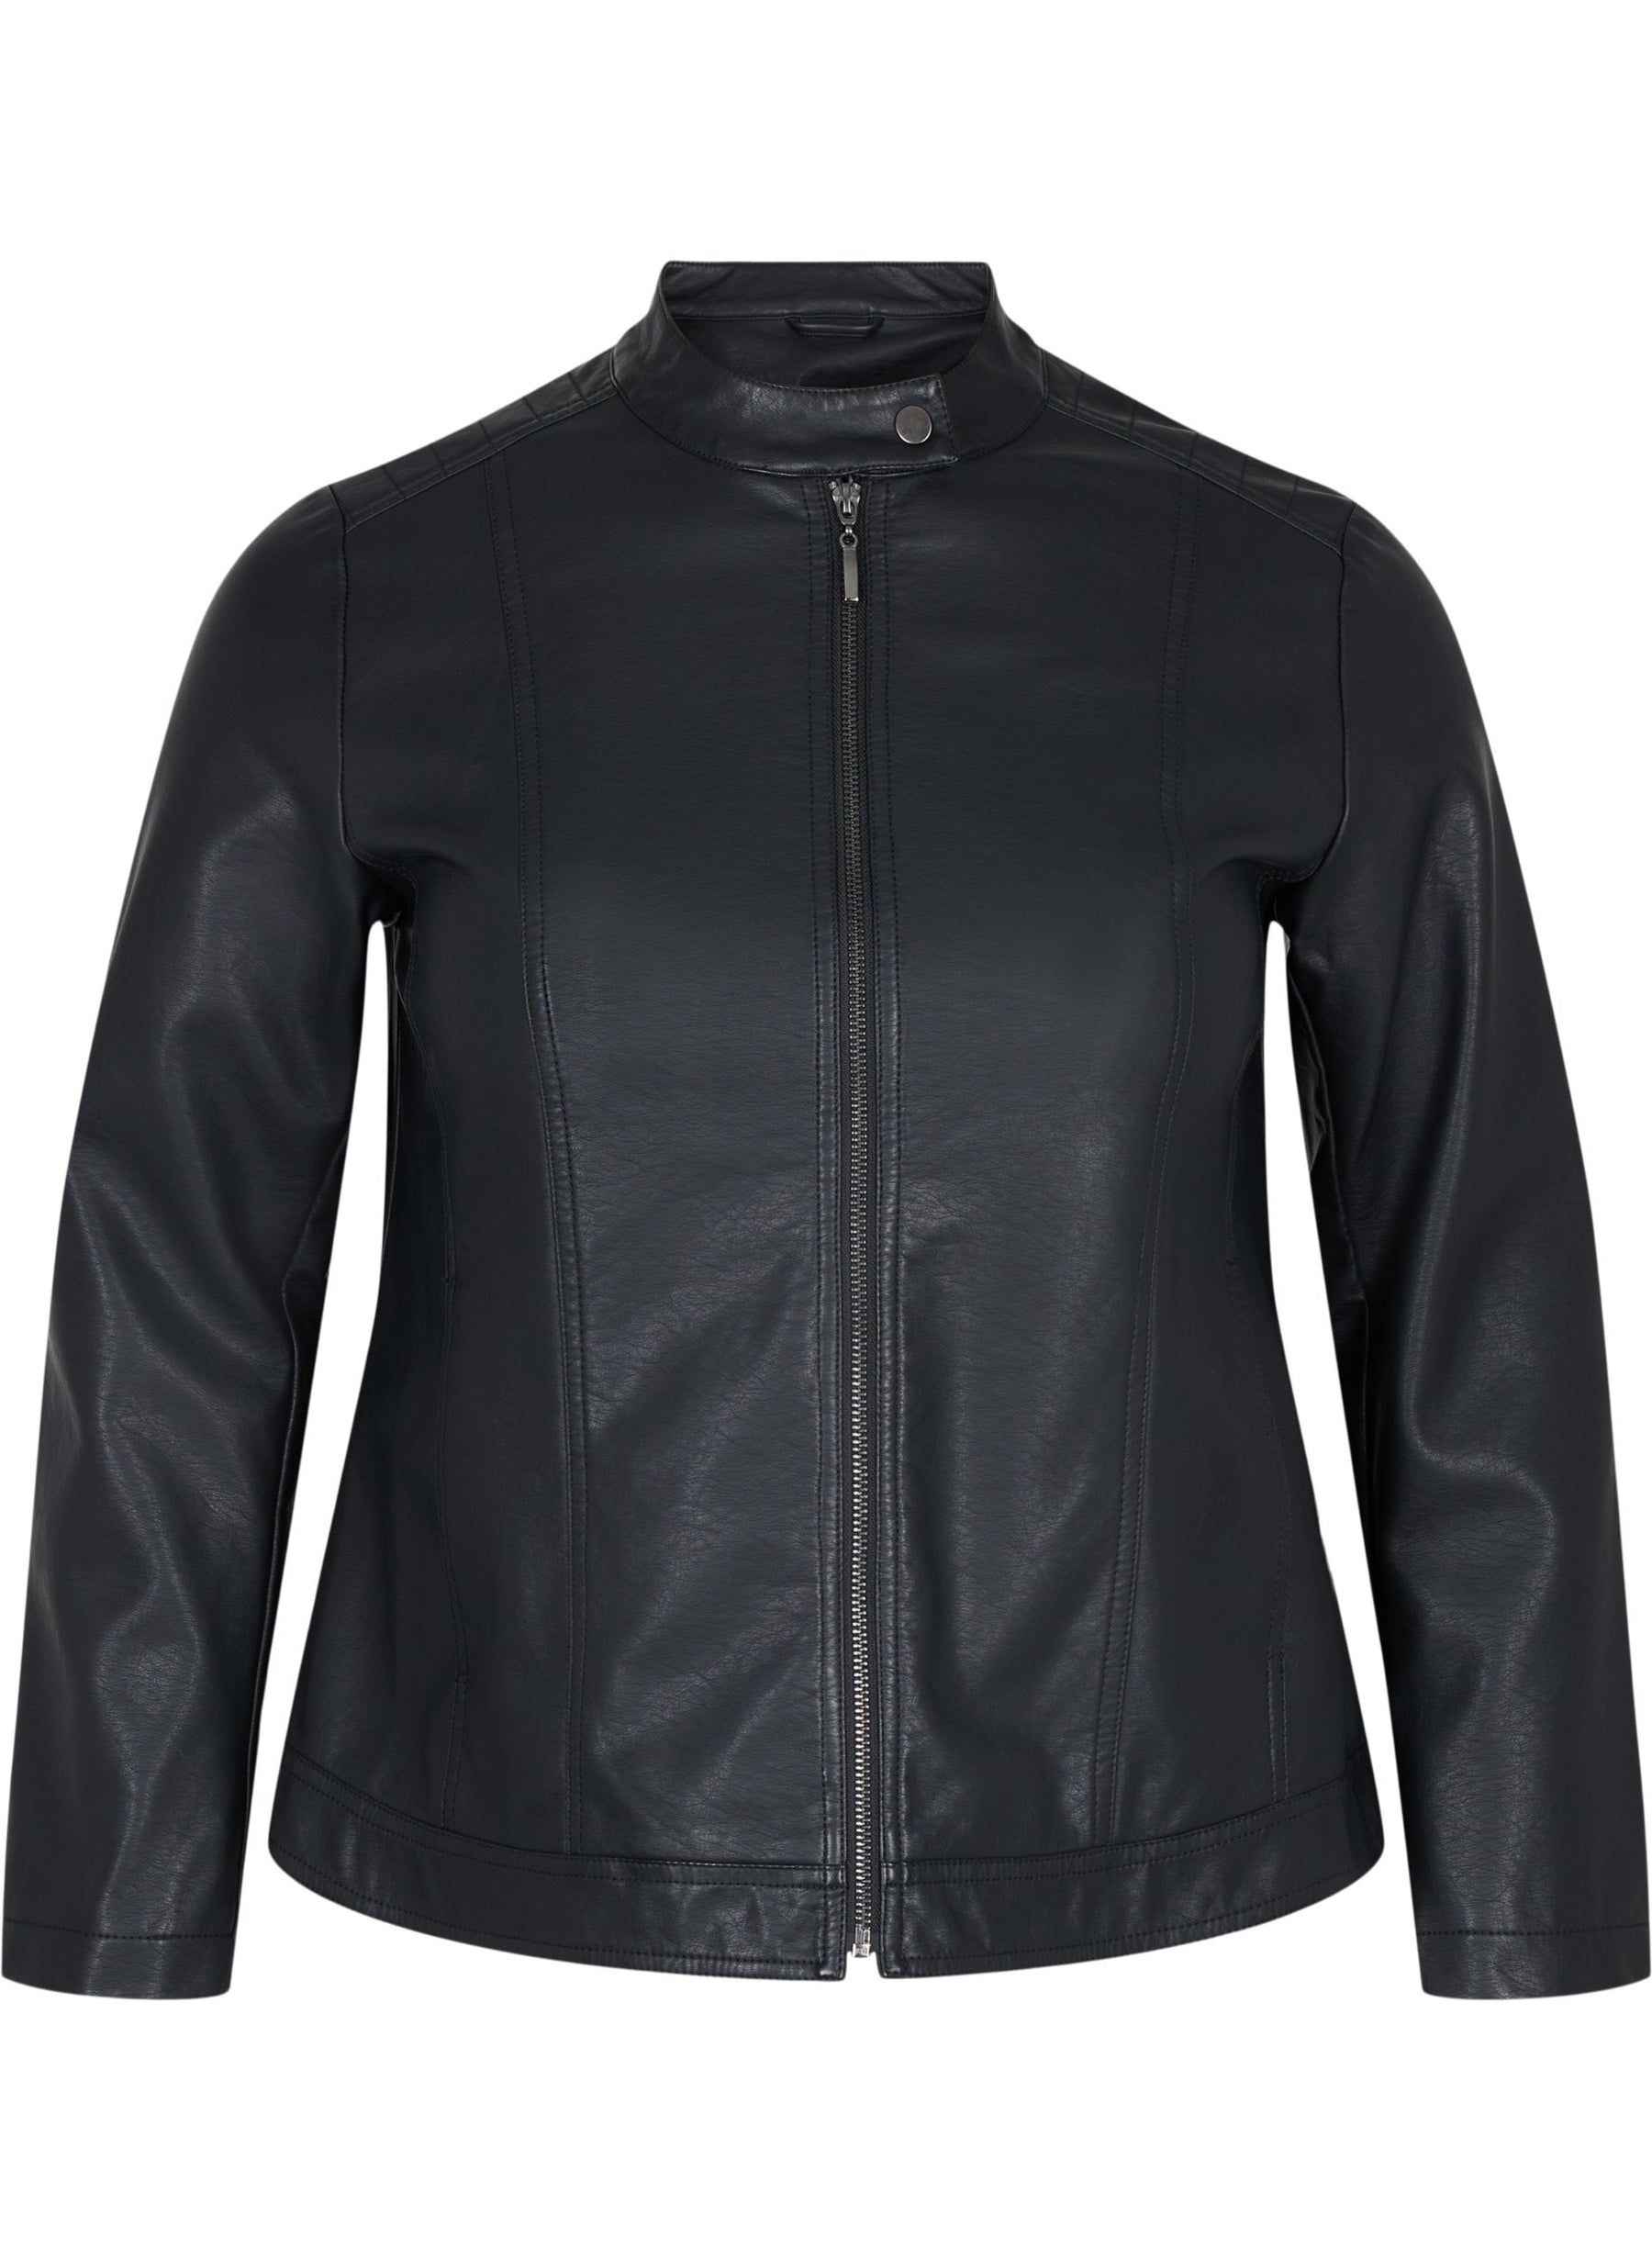 Zizzi Hollie Jacket in Black - Wardrobe Plus